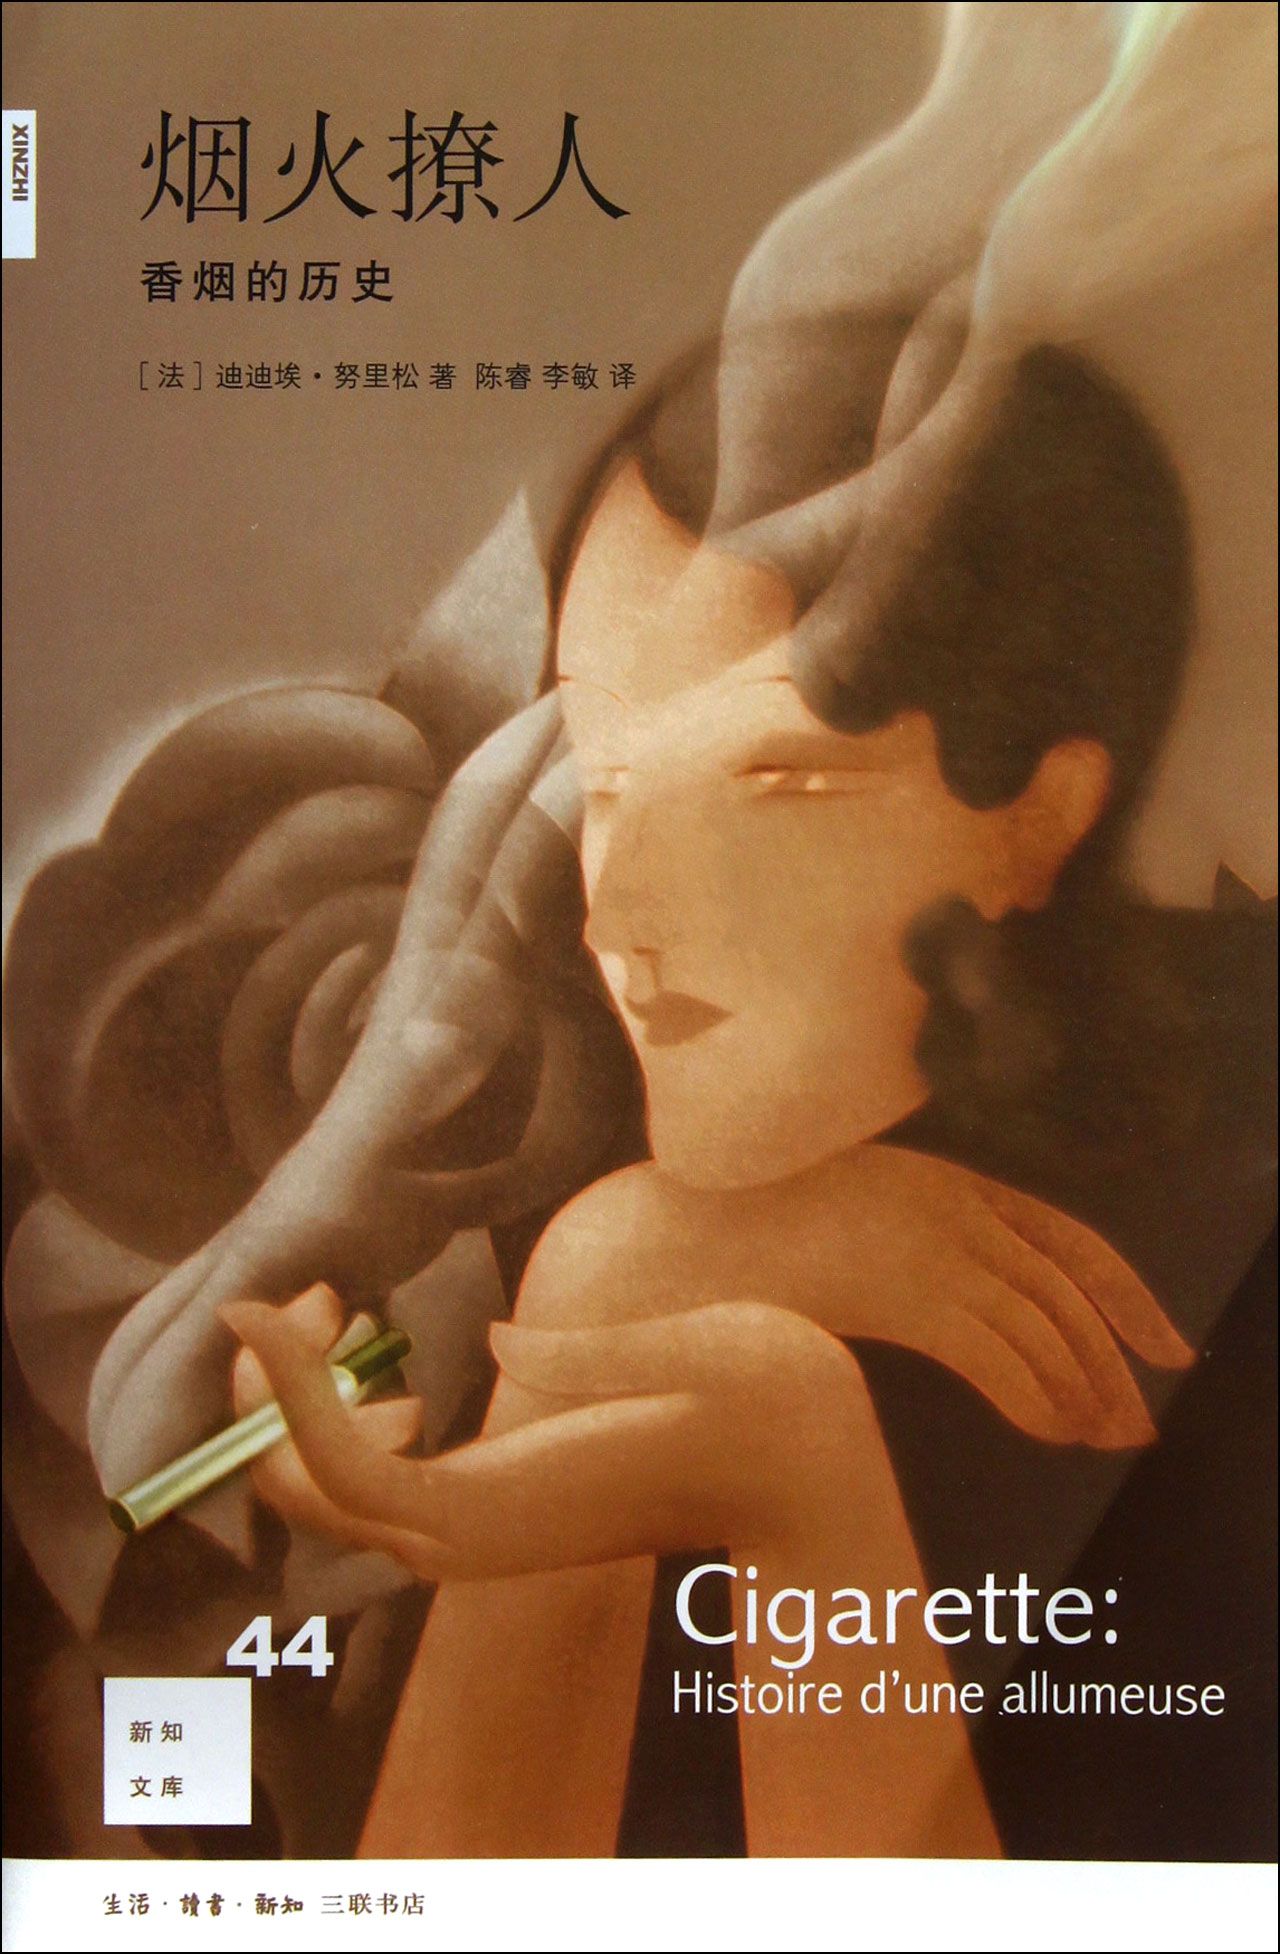 烟火撩人 香烟的历史 新知文库 欣赏一幅超现实主义风格的名画 勒内马格里特在自己的画室里创作出一幅古怪的烟斗肖像图